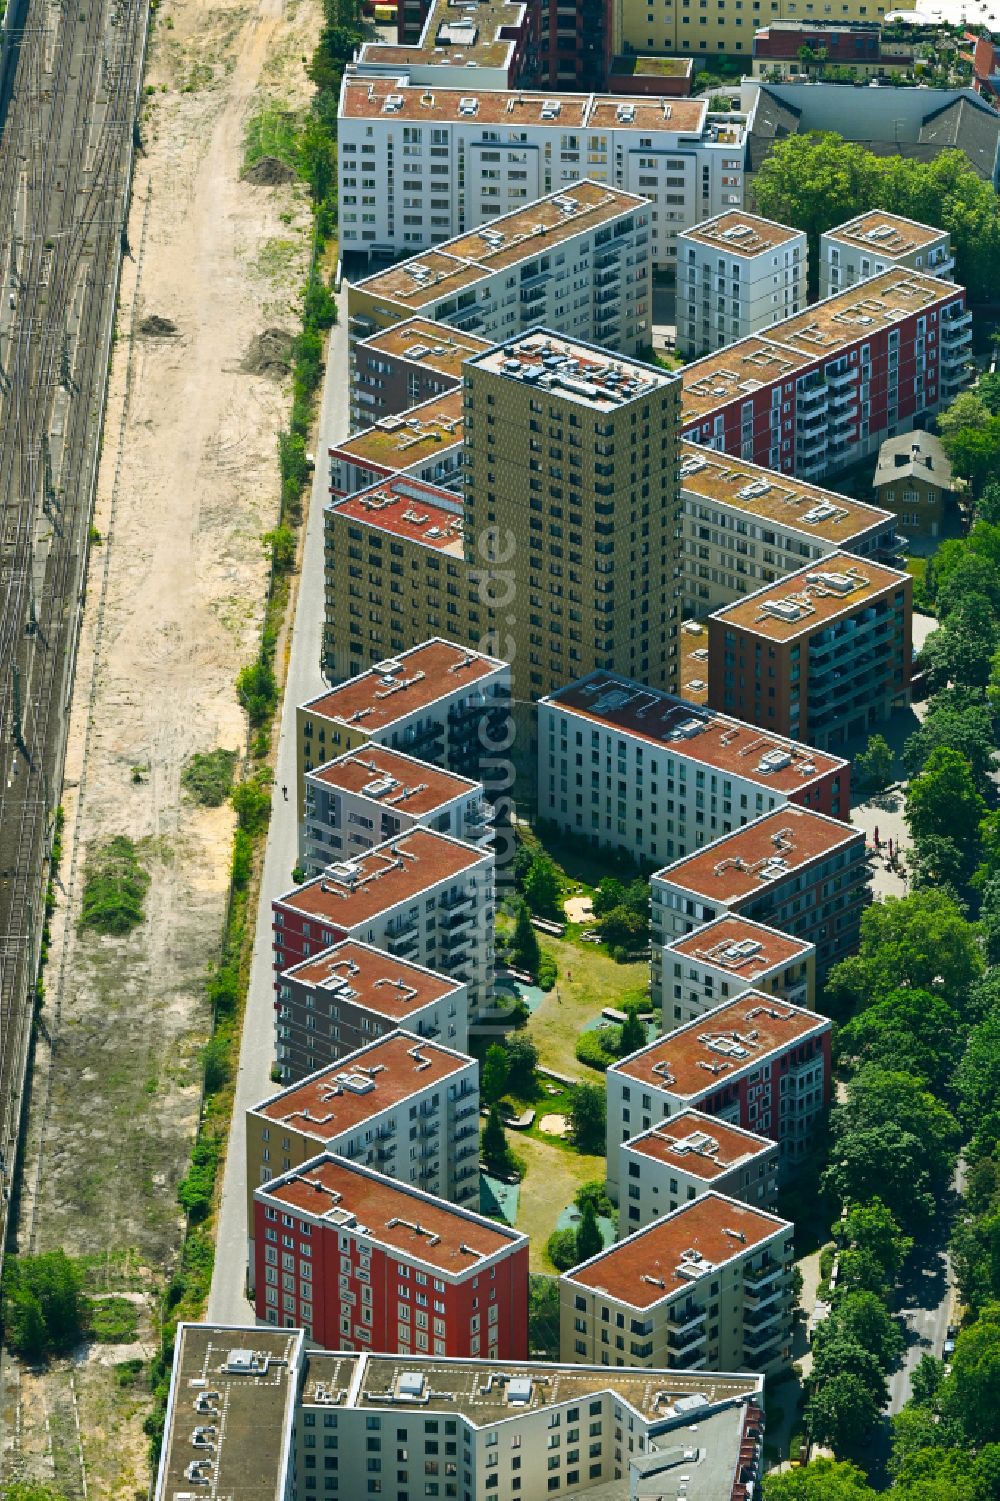 Luftbild Berlin - Wohngebiet der Mehrfamilienhaussiedlung in Berlin, Deutschland